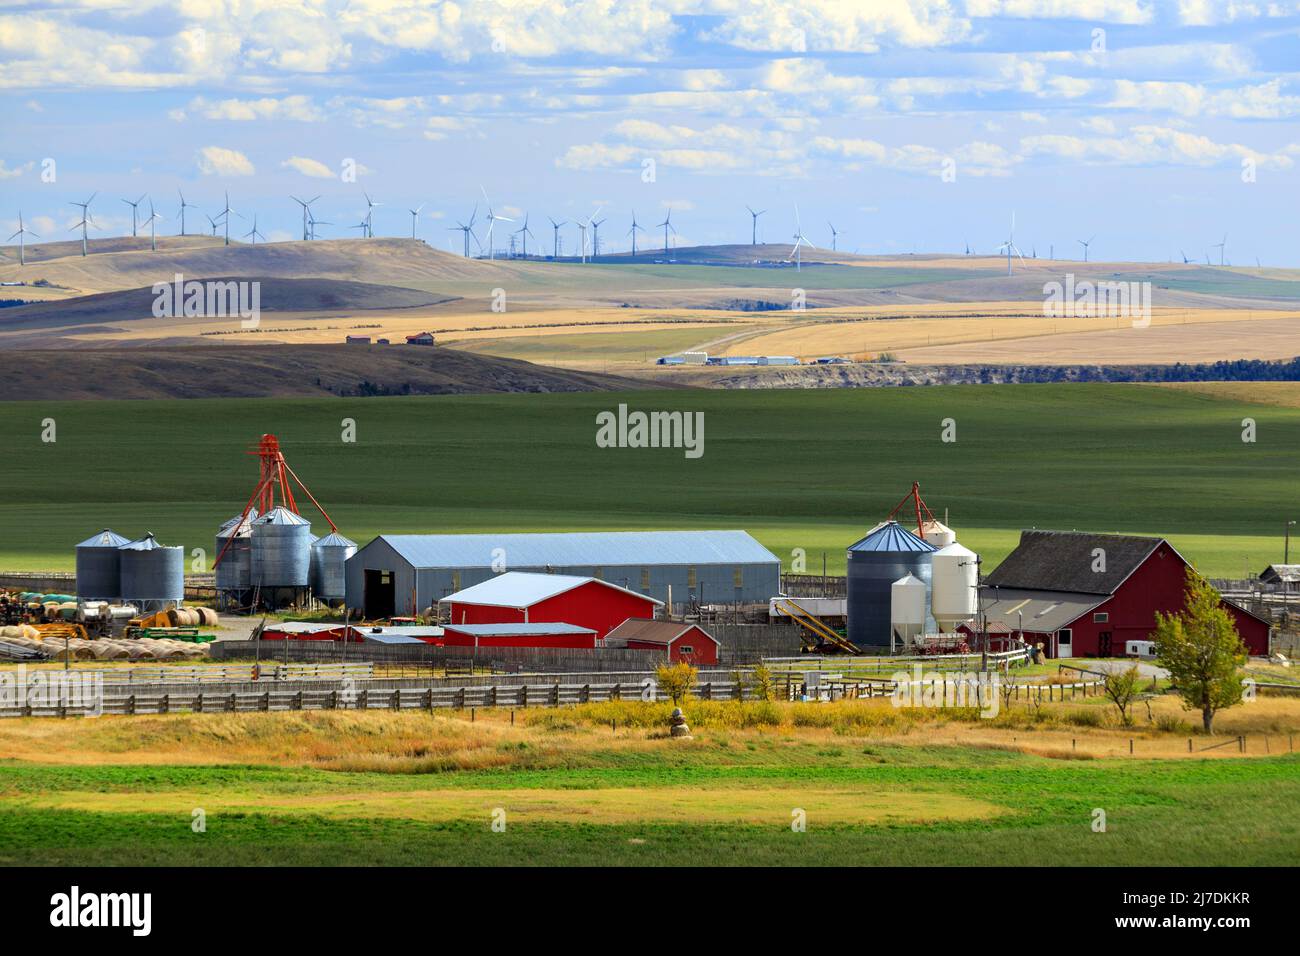 Eine landwirtschaftliche Farm und Ackerland-Landschaft in den kanadischen Prärien in der Nähe von Lundbreck, Alberta, Kanada. Stockfoto